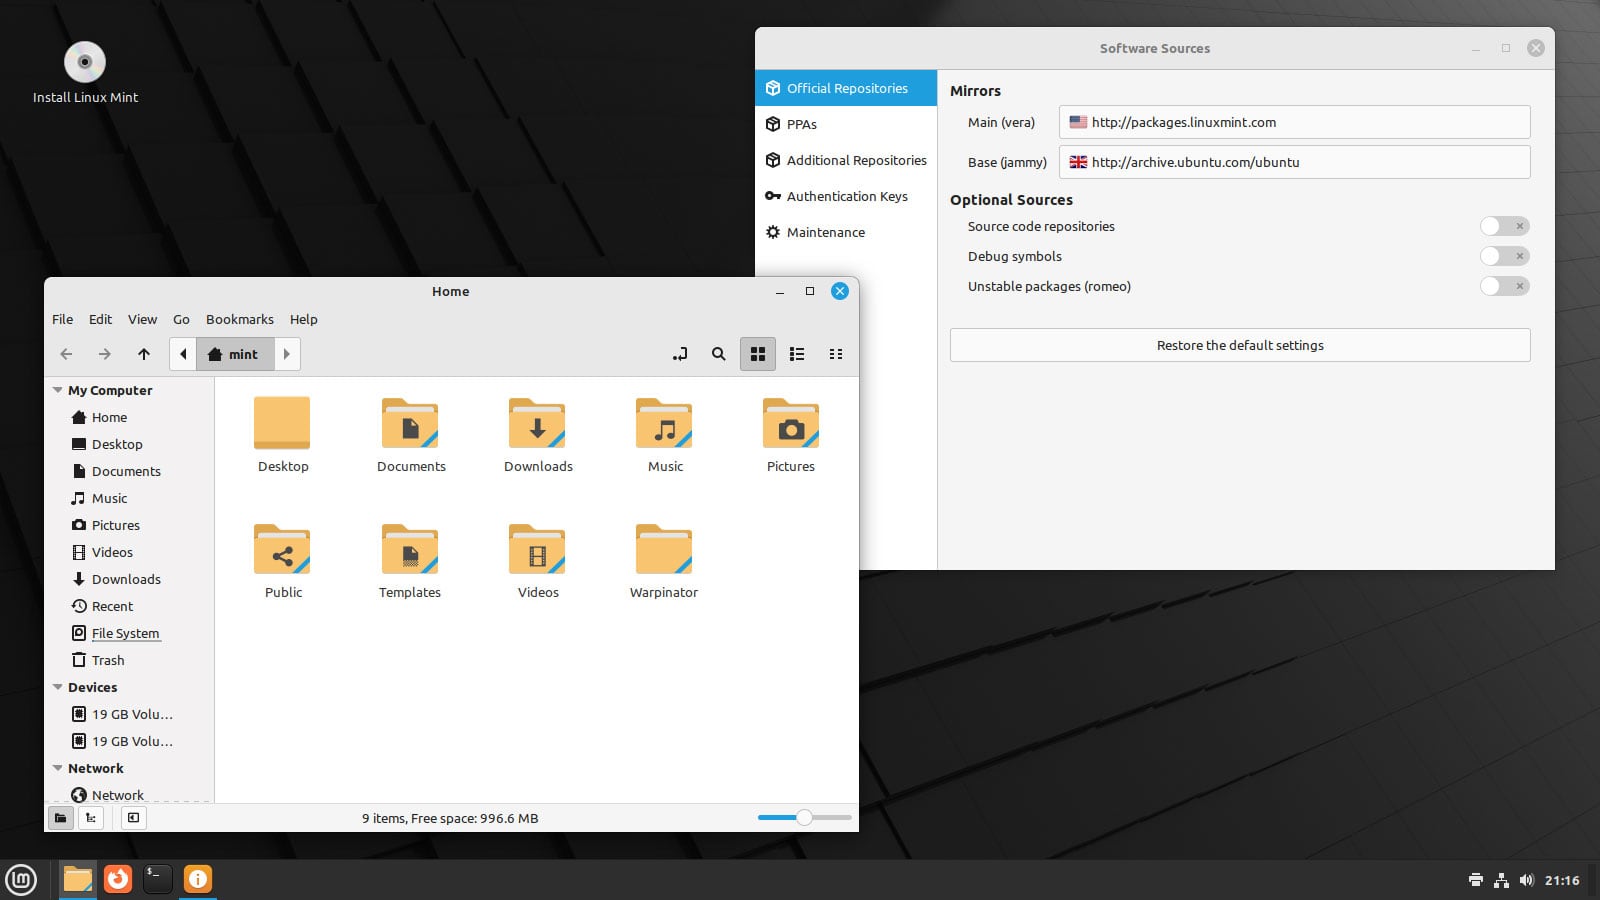 Zrzut ekranu pulpitu Linux Mint 21.1 z nowymi ikonami folderów widocznymi w menedżerze plików Nemo